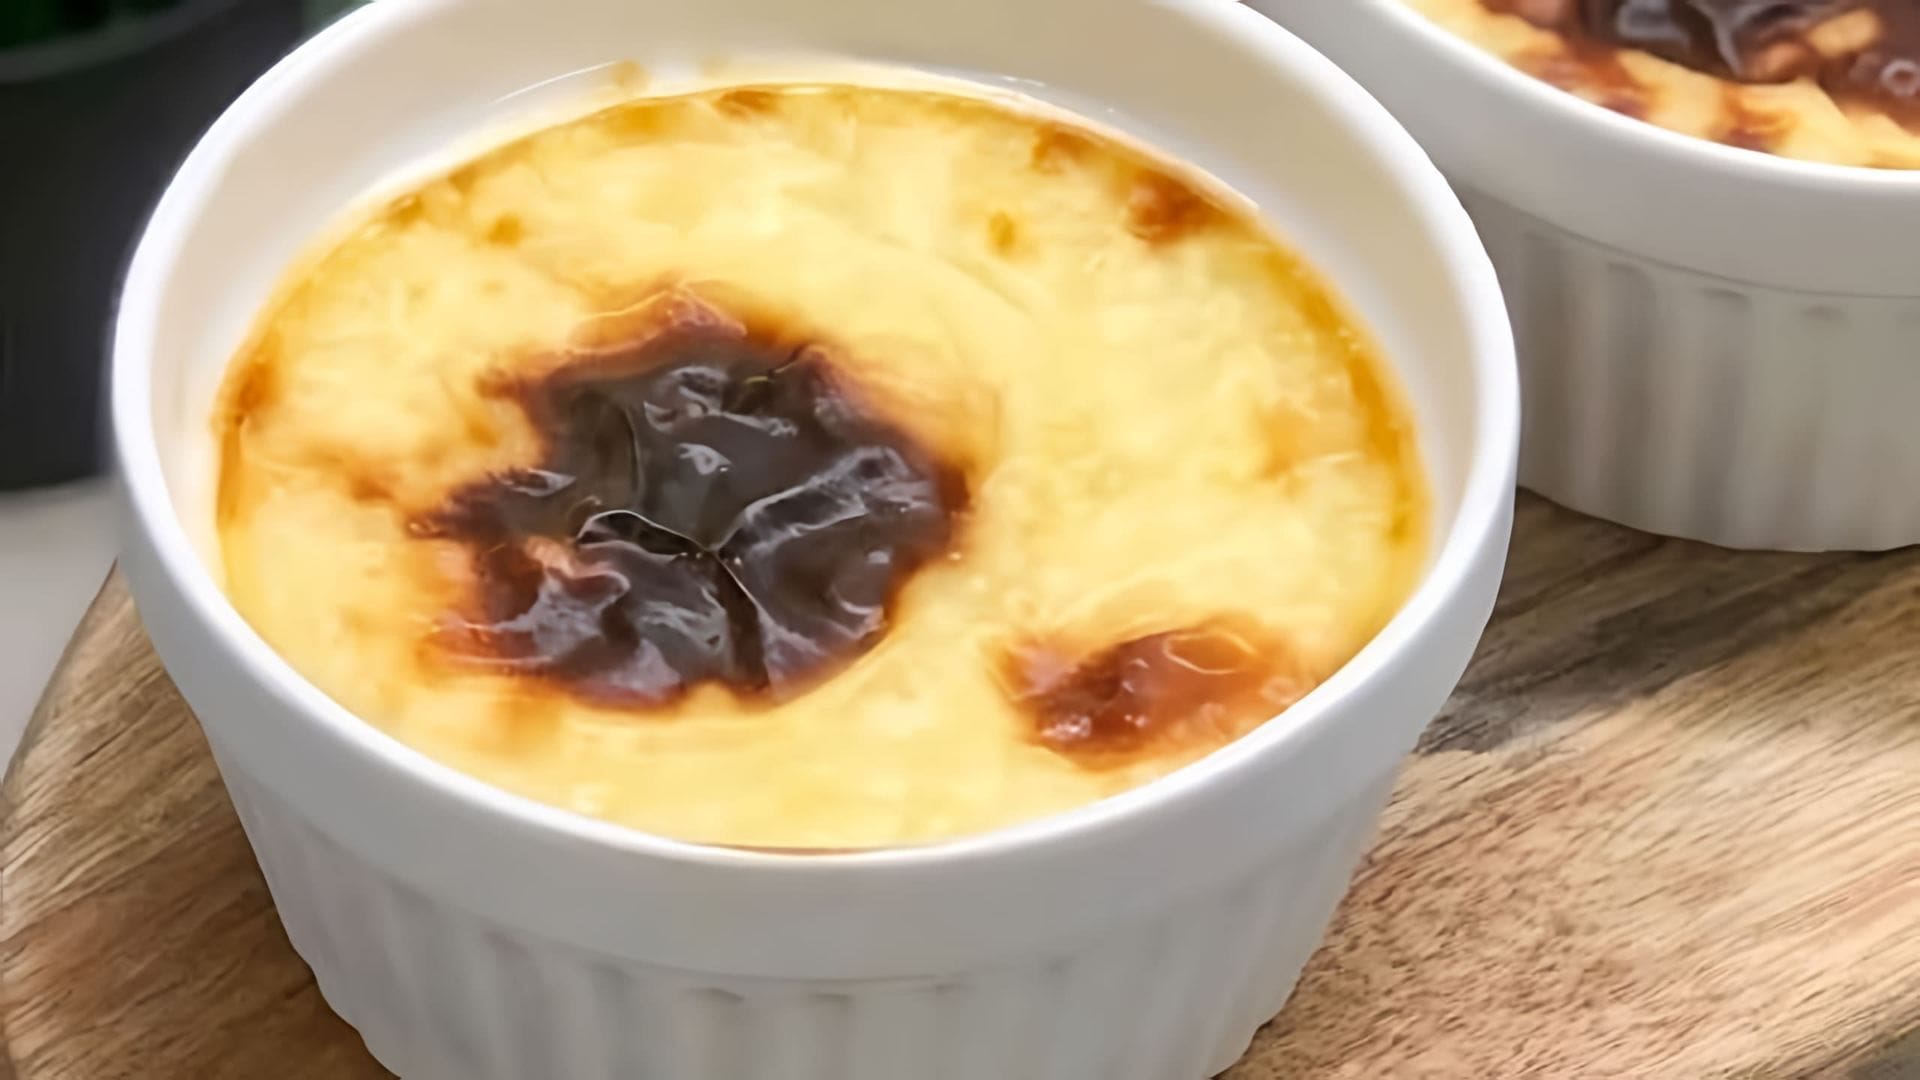 В этом видео-ролике рассказывается о турецком десерте под названием "Сютлач", который готовится из риса